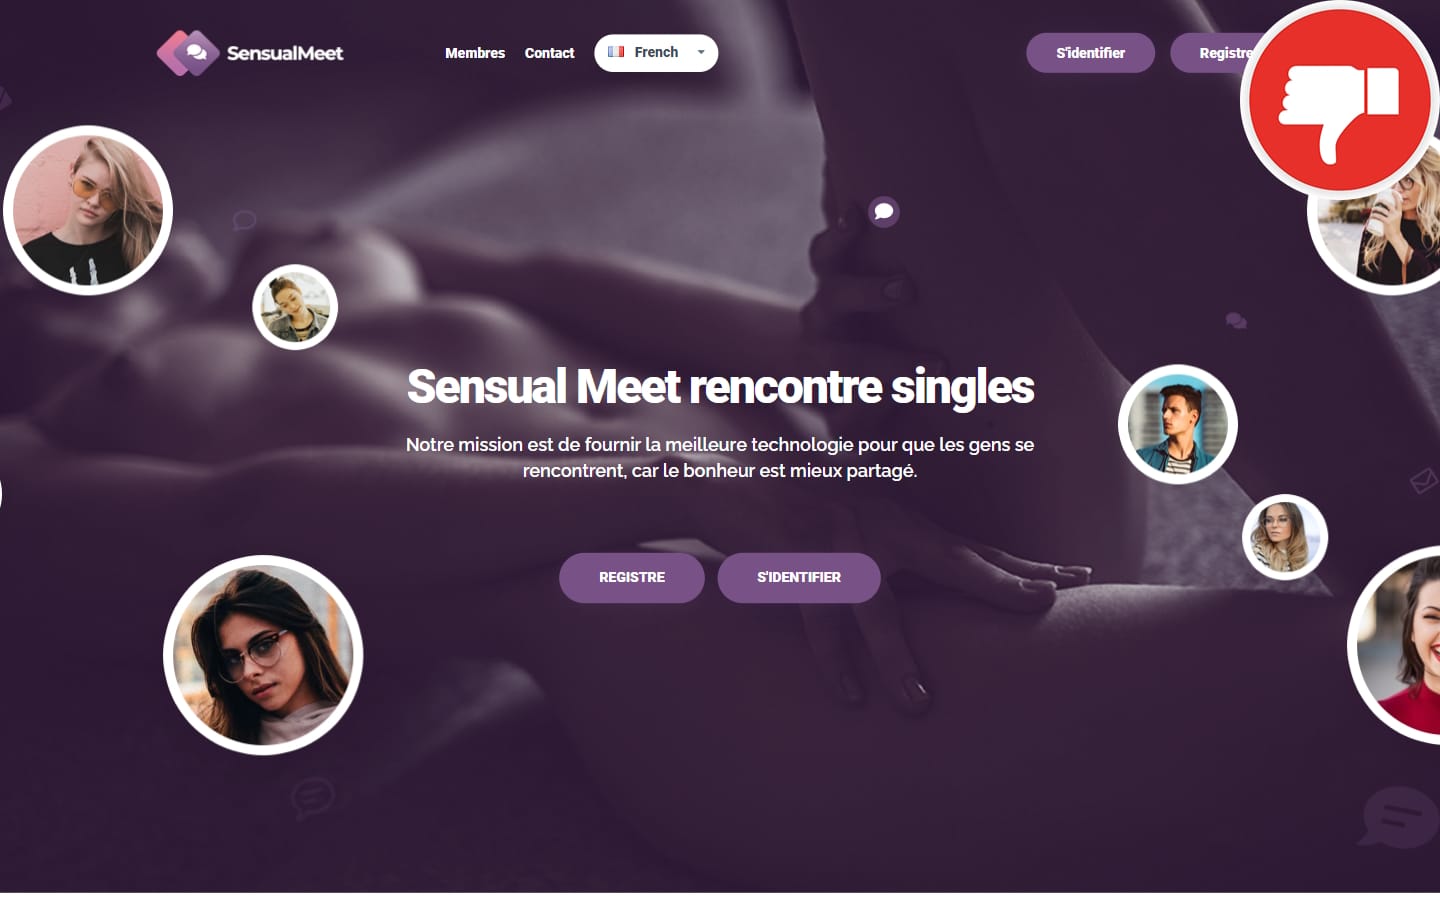 SensualMeet.com